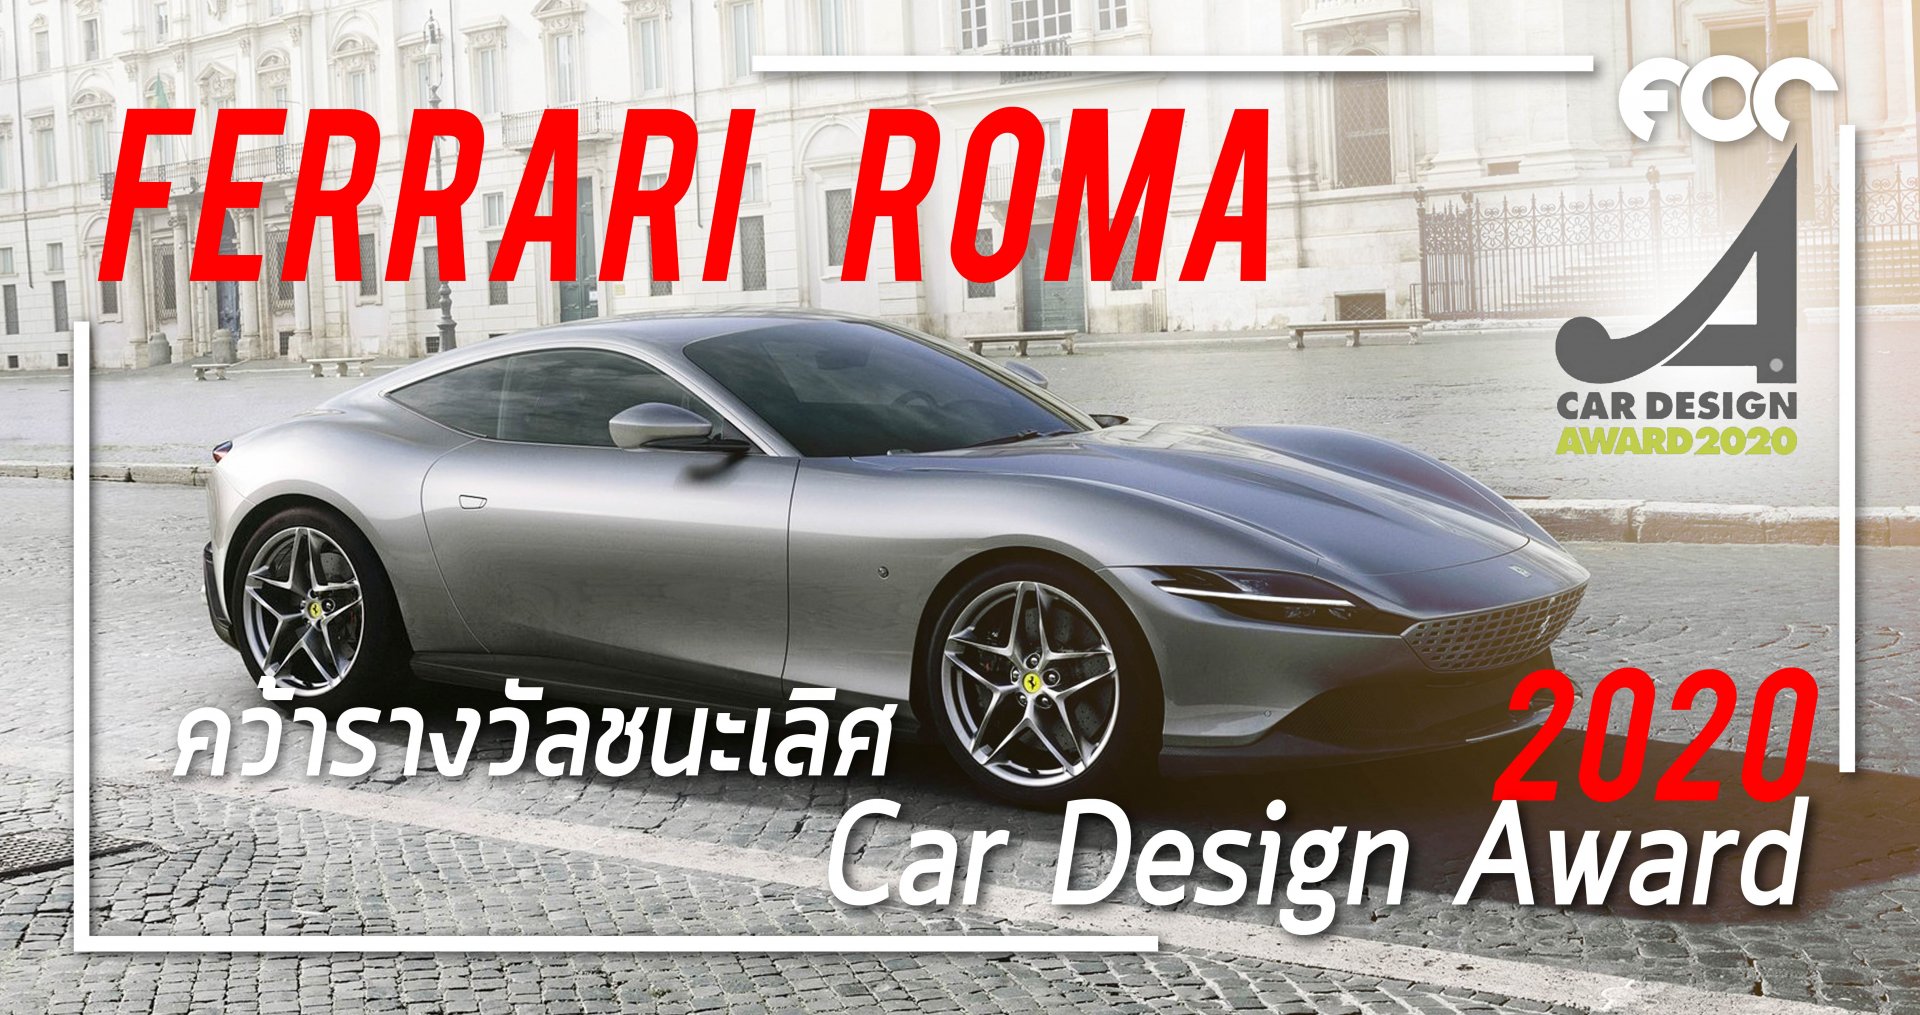 เฟอร์รารี่ Roma คว้ารางวัลชนะเลิศ 2020 Car Design Award 